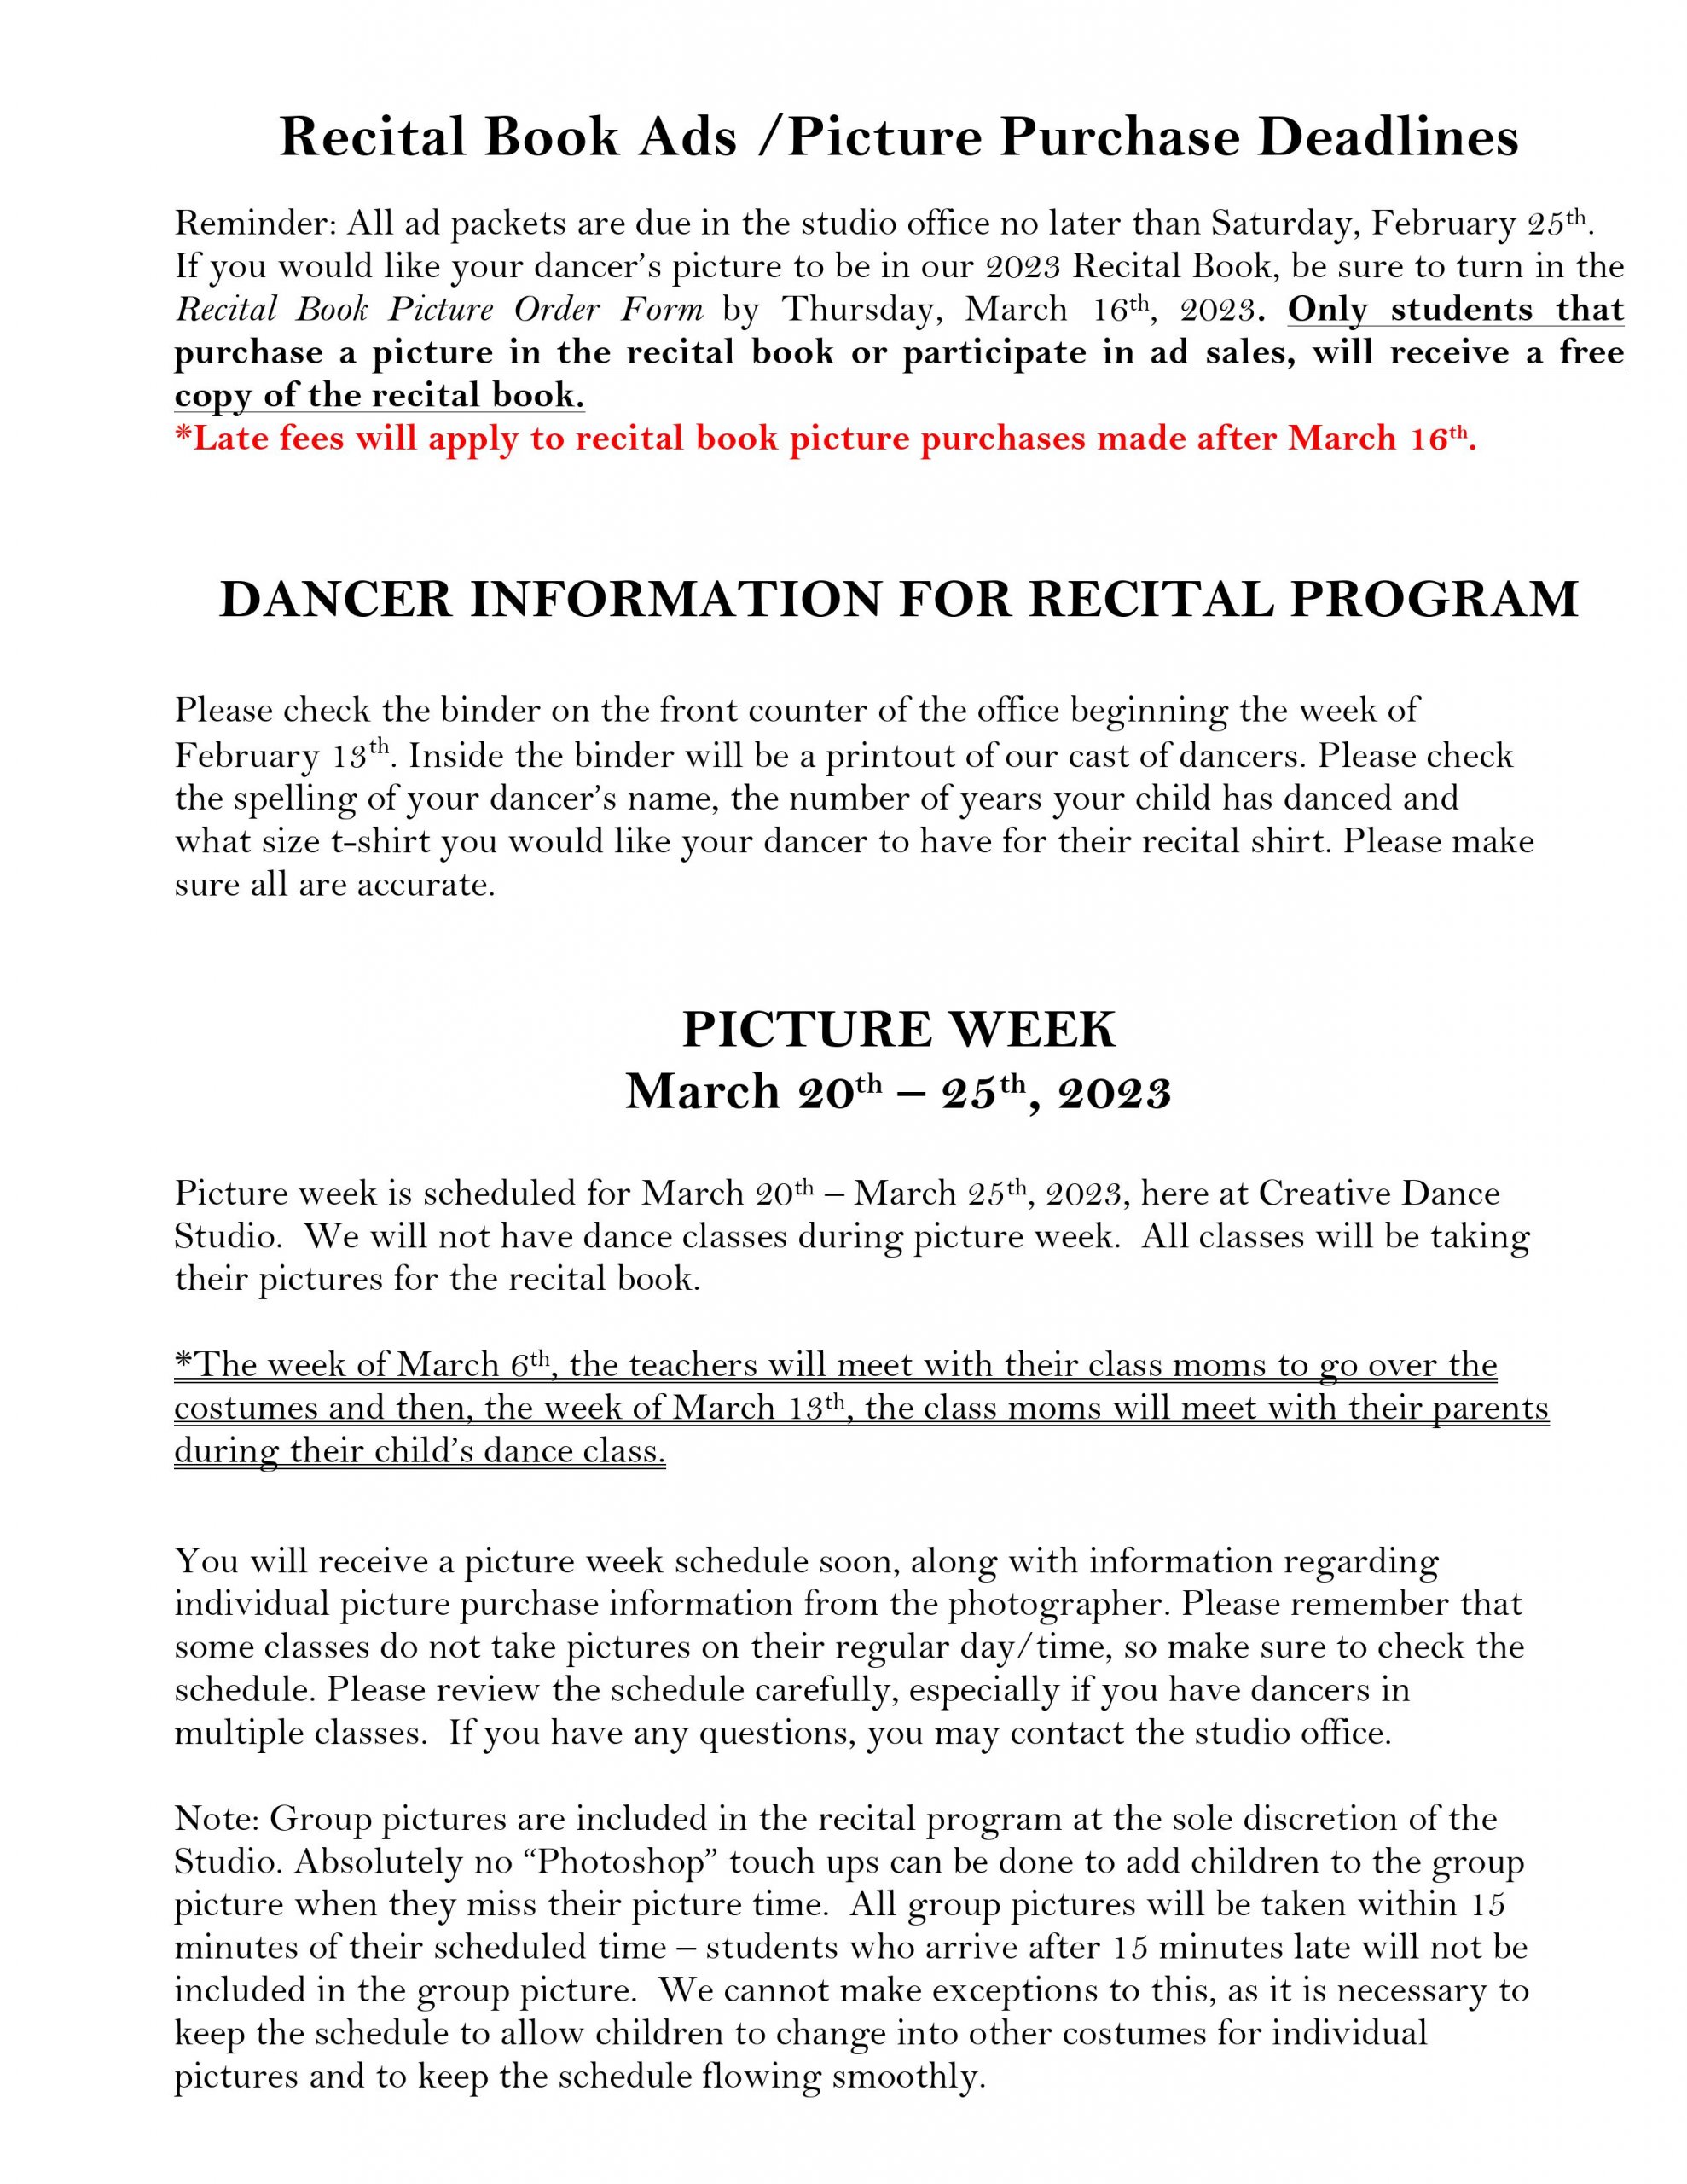 2023 Recital Program Book